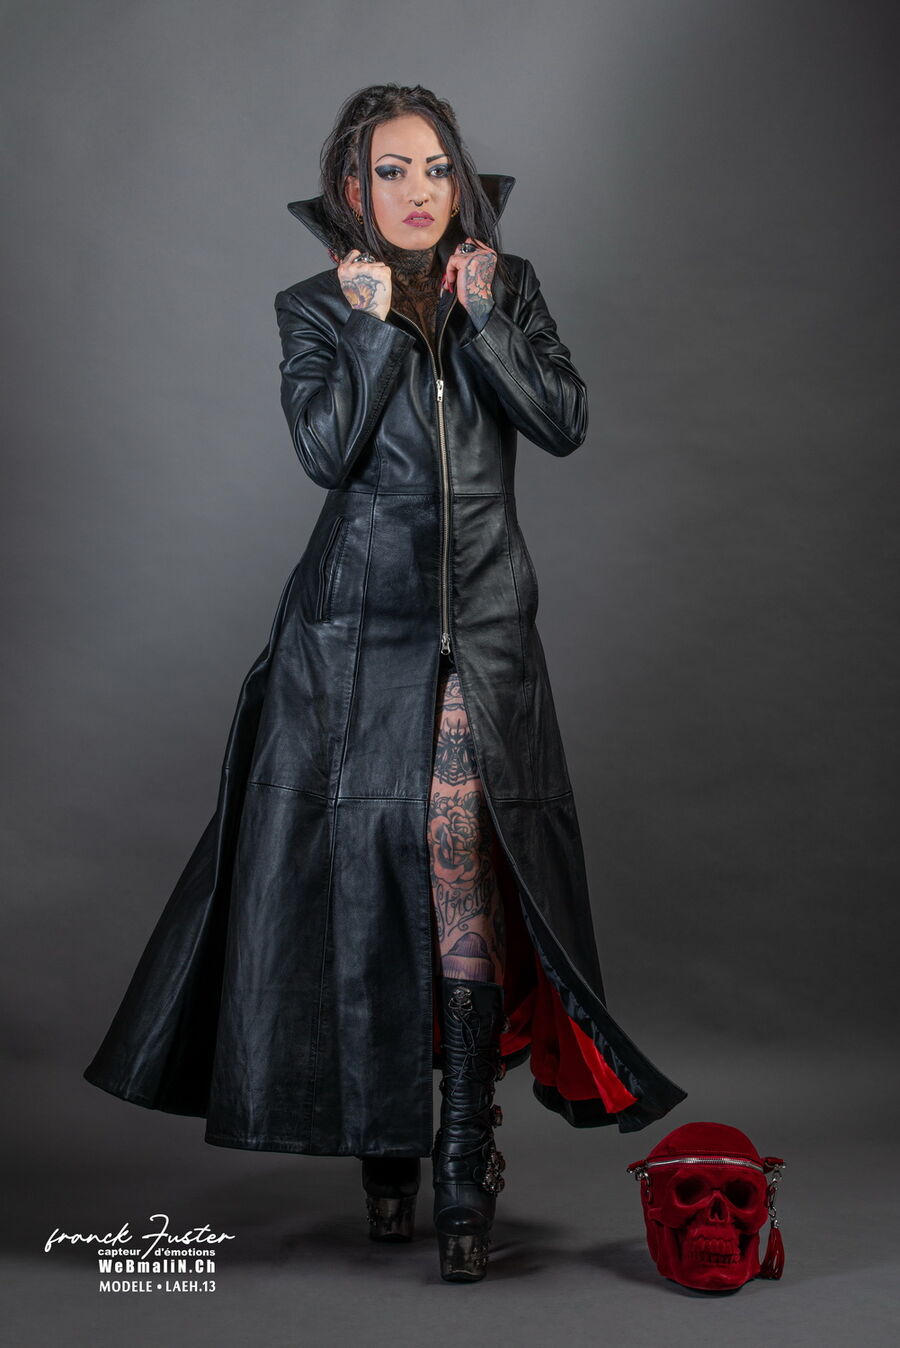 manteau noir cuir long femme